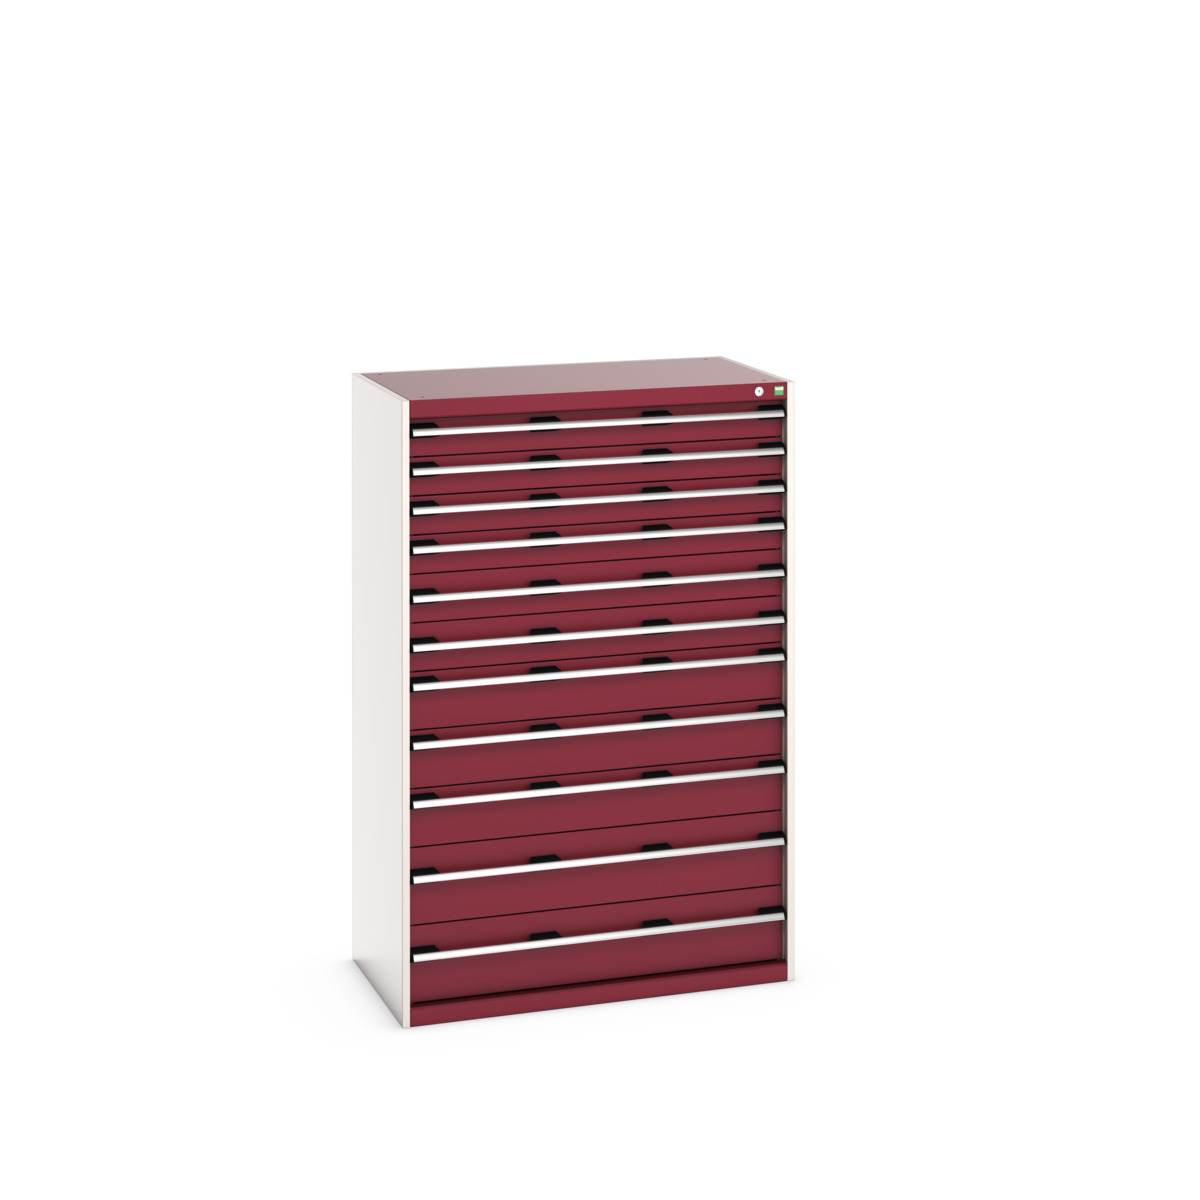 40021046.24V - cubio drawer cabinet